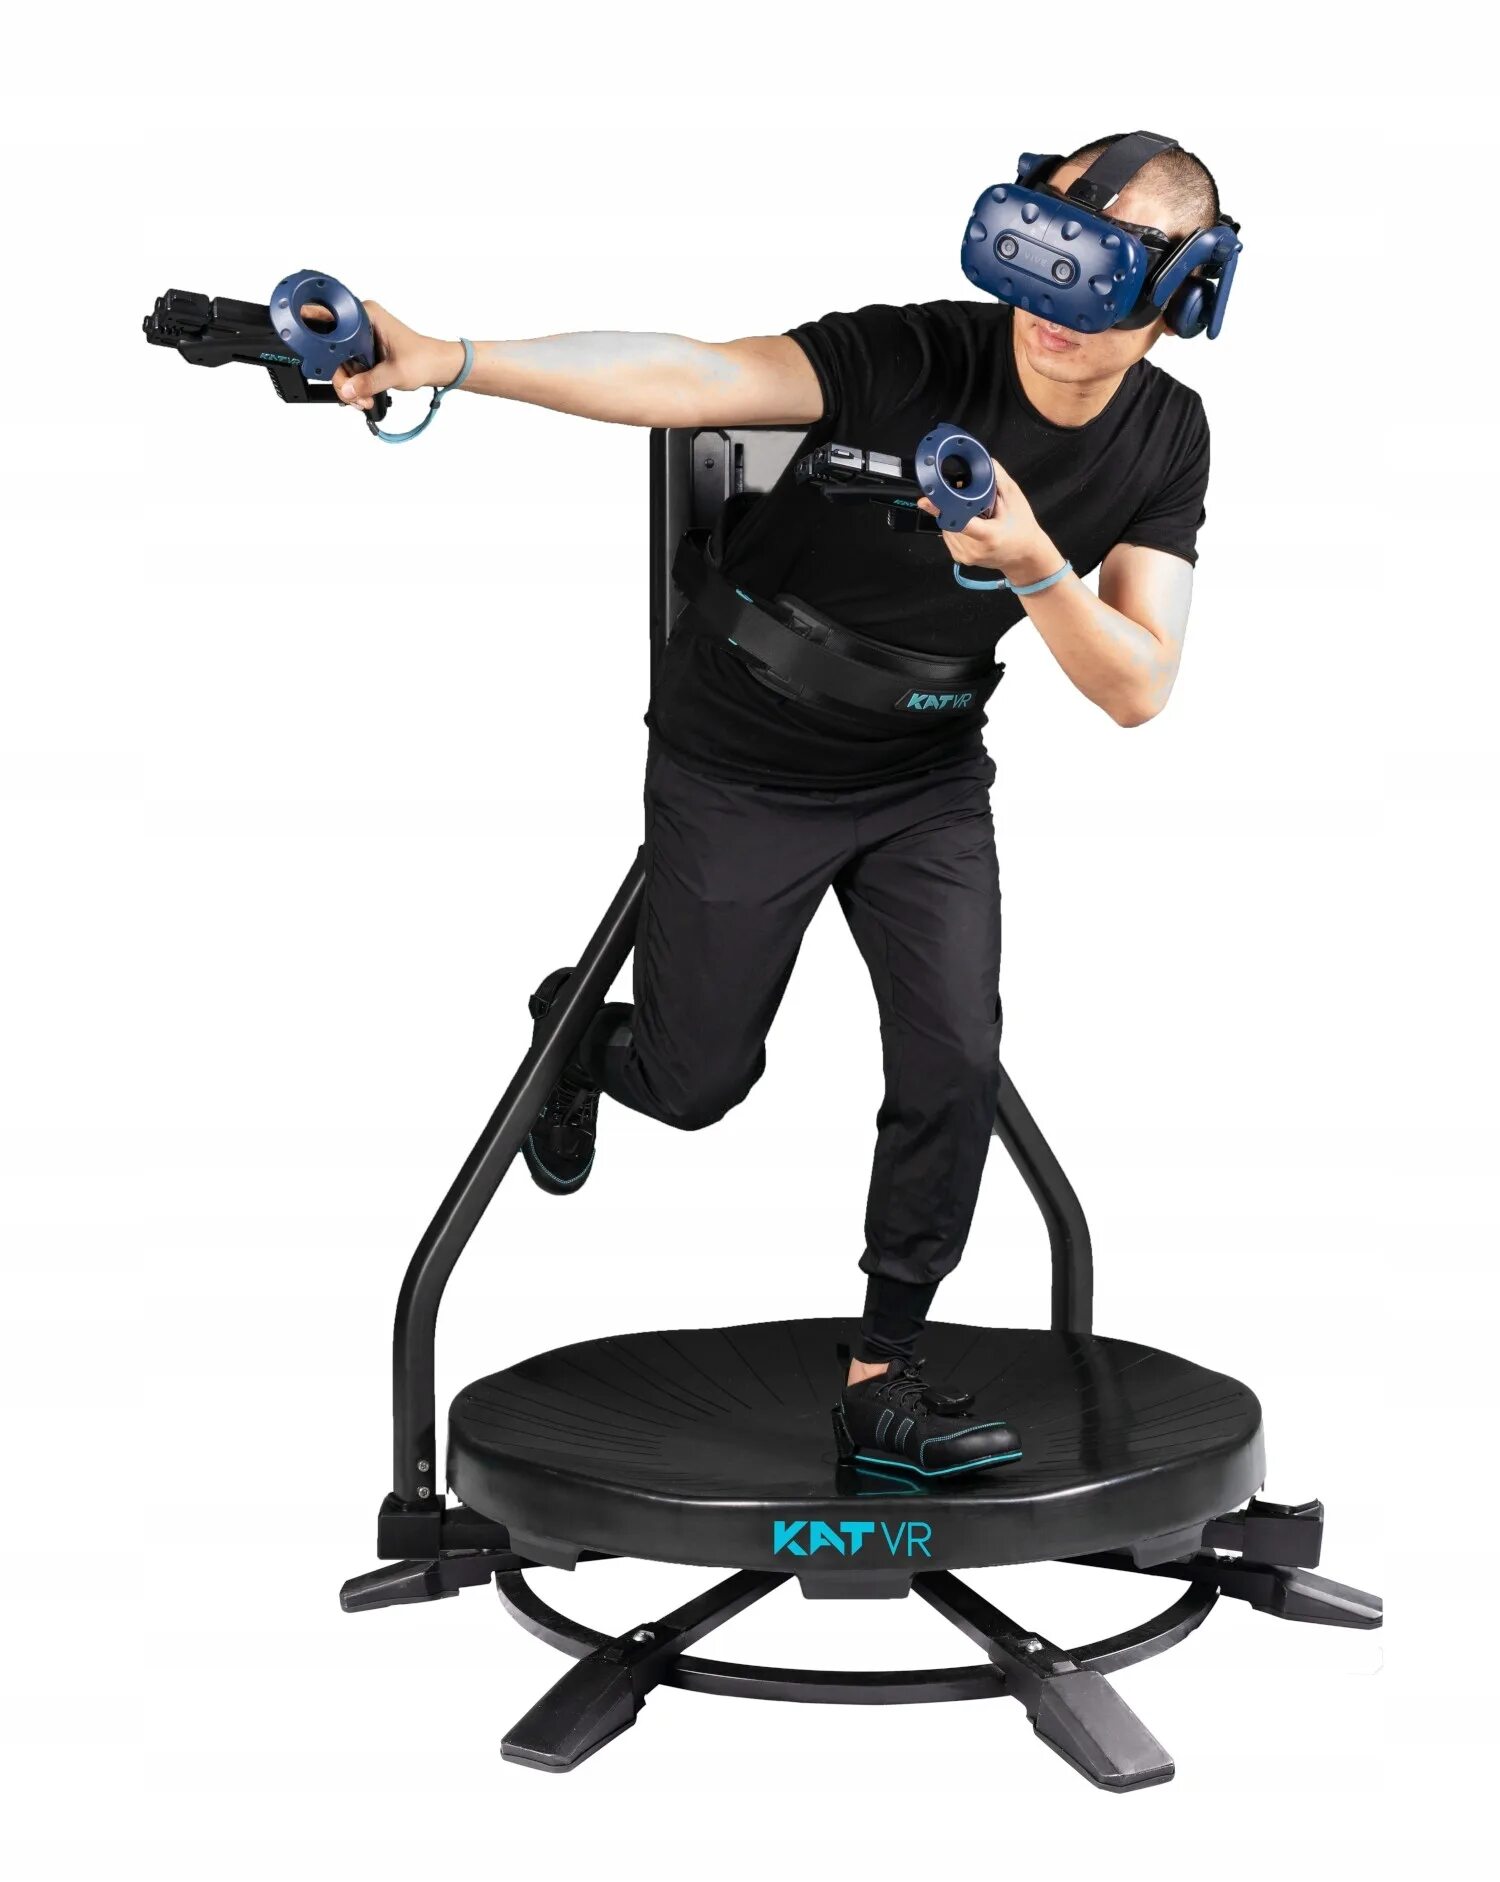 Беговая дорожка VR kat walk c. Беговая VR платформа kat walk Mini. Дорожка для виртуальной реальности. Kat walk c 2(Plus).